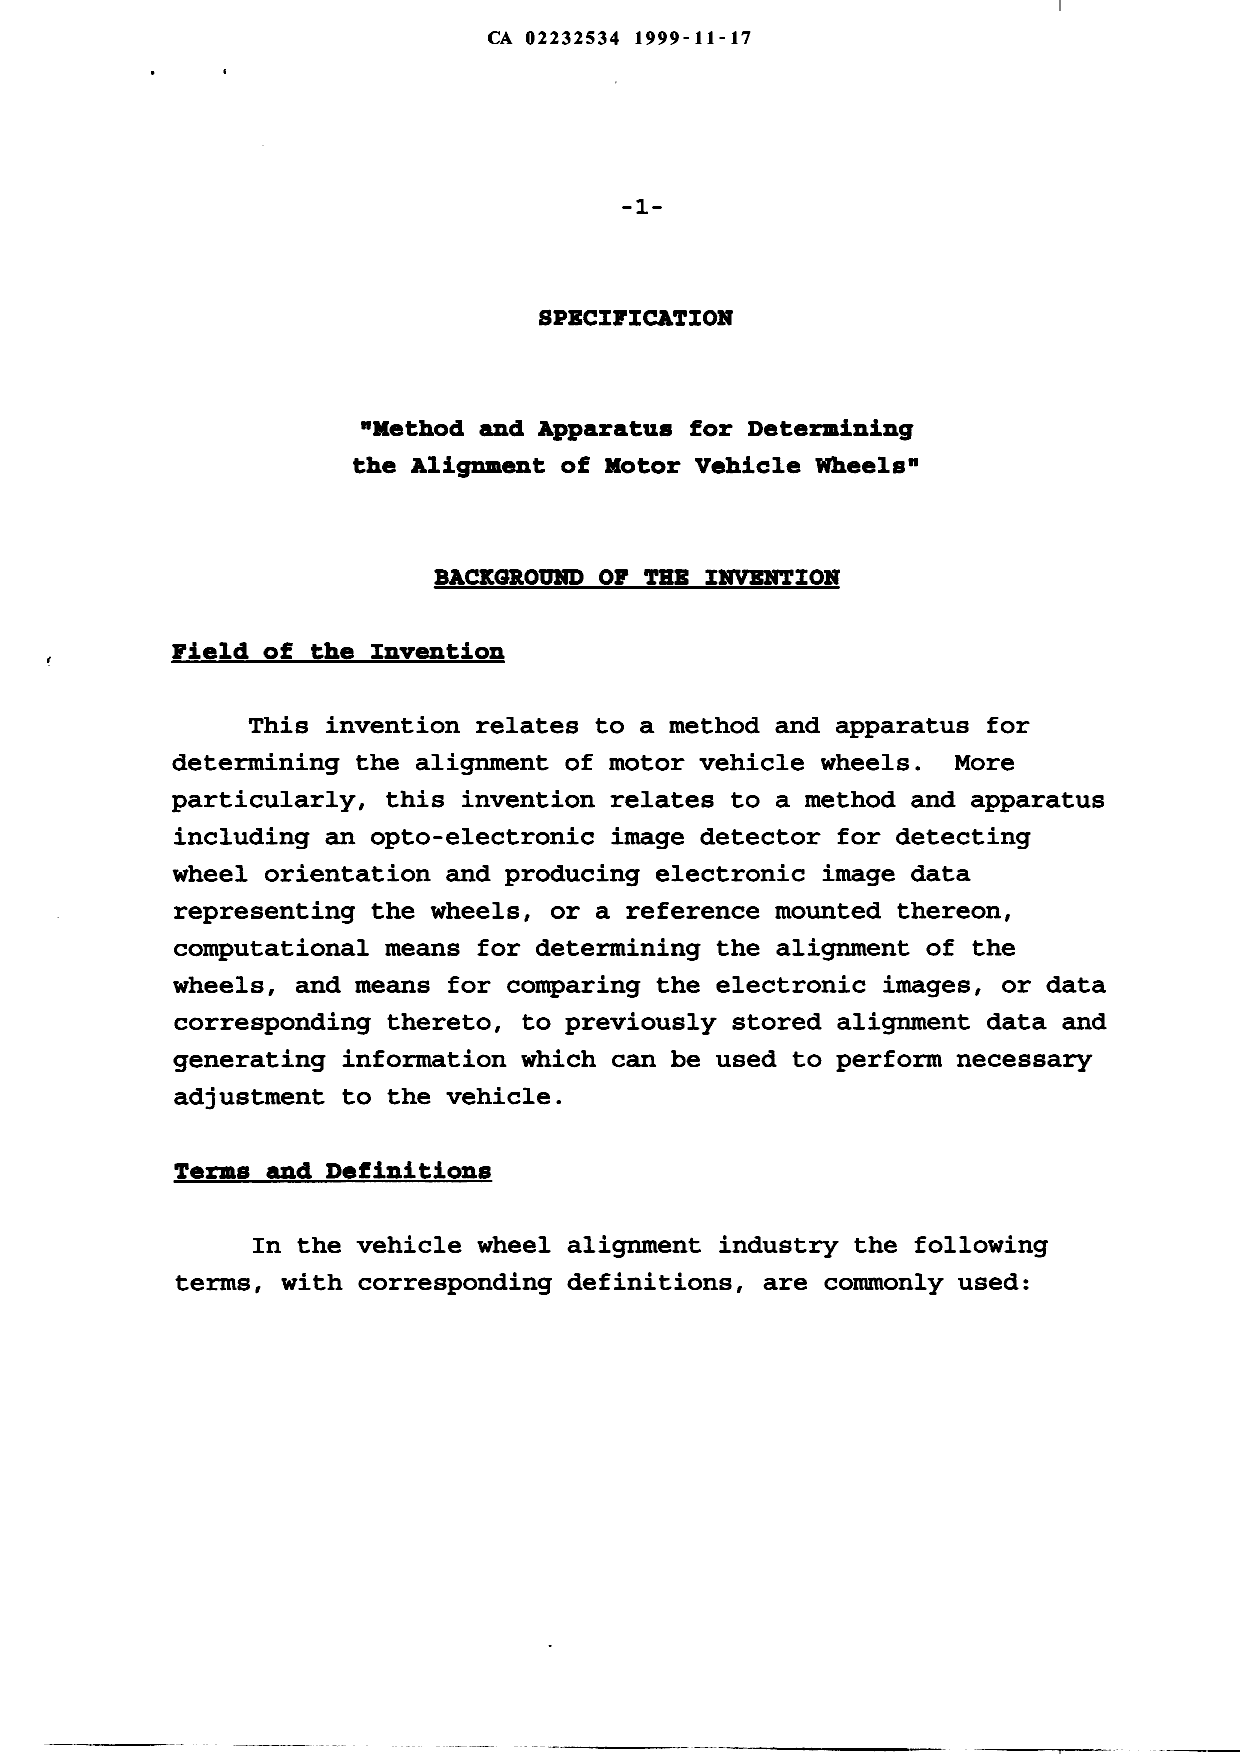 Document de brevet canadien 2232534. Description 19991117. Image 1 de 50